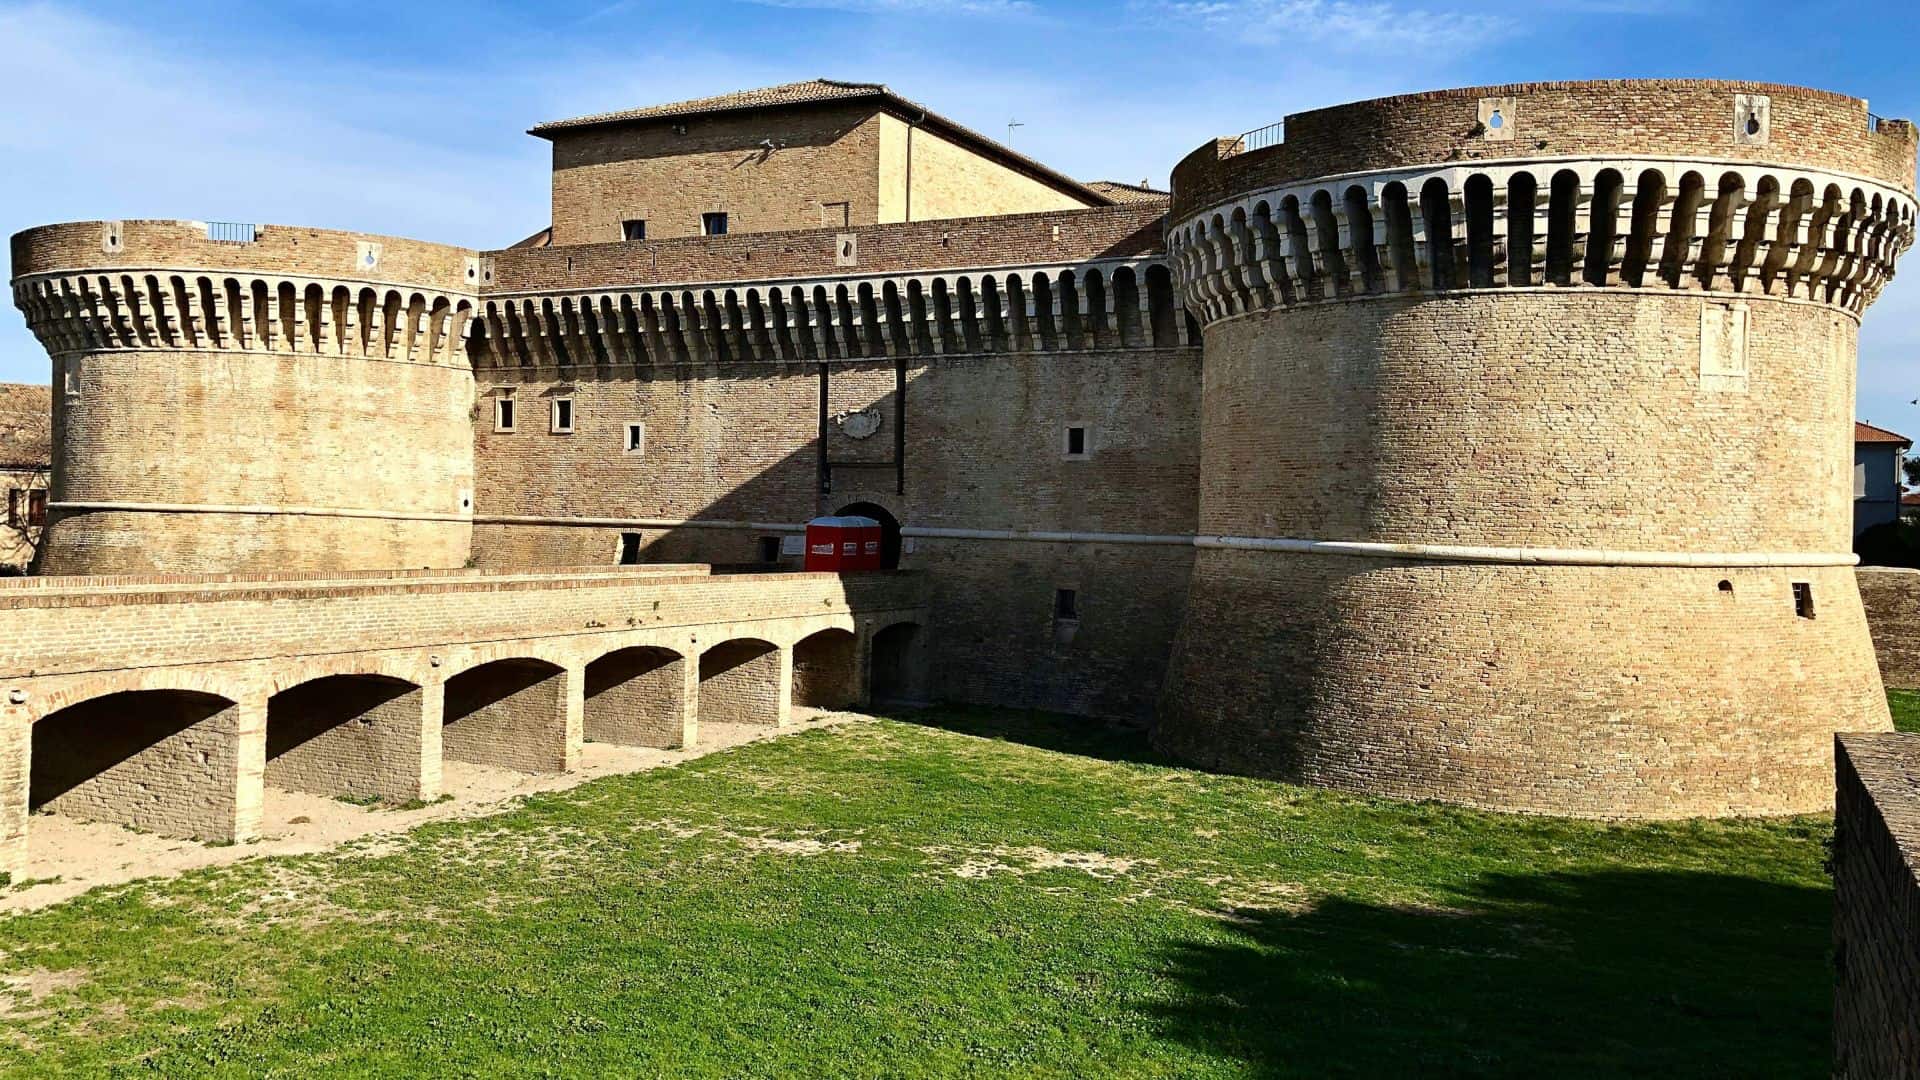 The Rocca Roveresca of Senigallia